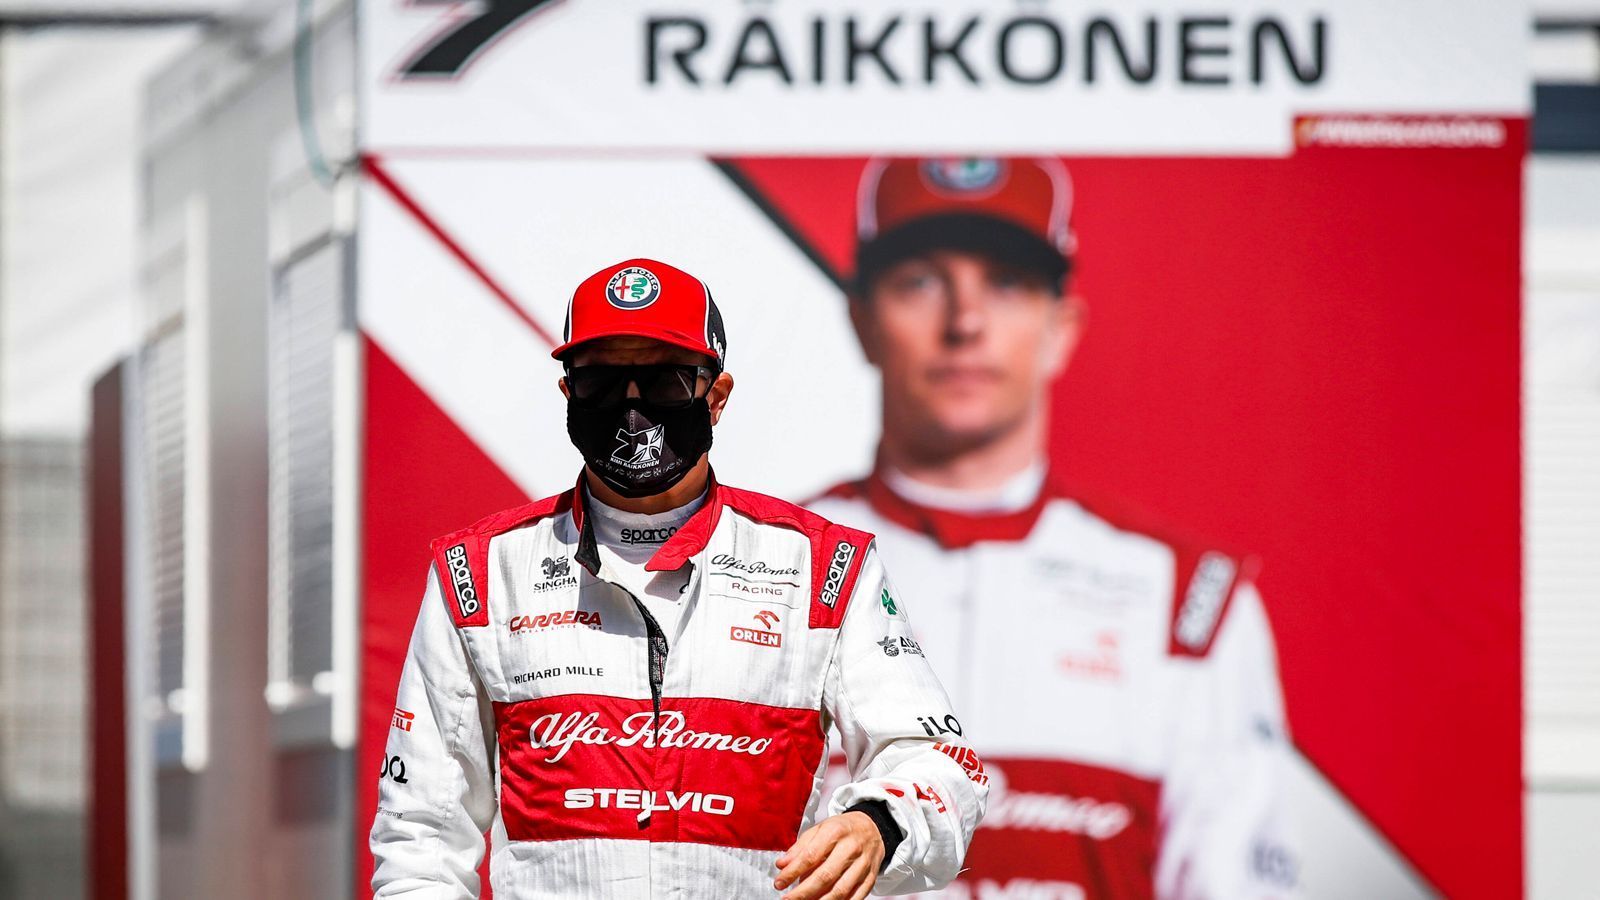 
                <strong>Kimi Räikkönen (Alfa Romeo)</strong><br>
                Zweimal fährt der Finne in die Punkteränge. Er sitzt in einem wegen des Ferrari-Motors schwächelnden Alfa Romeo, sitzt aber eine eher belanglose Saison ab. So belanglos und blass, dass man sich fast schon wundert, dass Räikkönen seine Karriere fortsetzt. Aber immerhin ist er als Typ immer ein Gewinn. ran.de-Note: 4
              